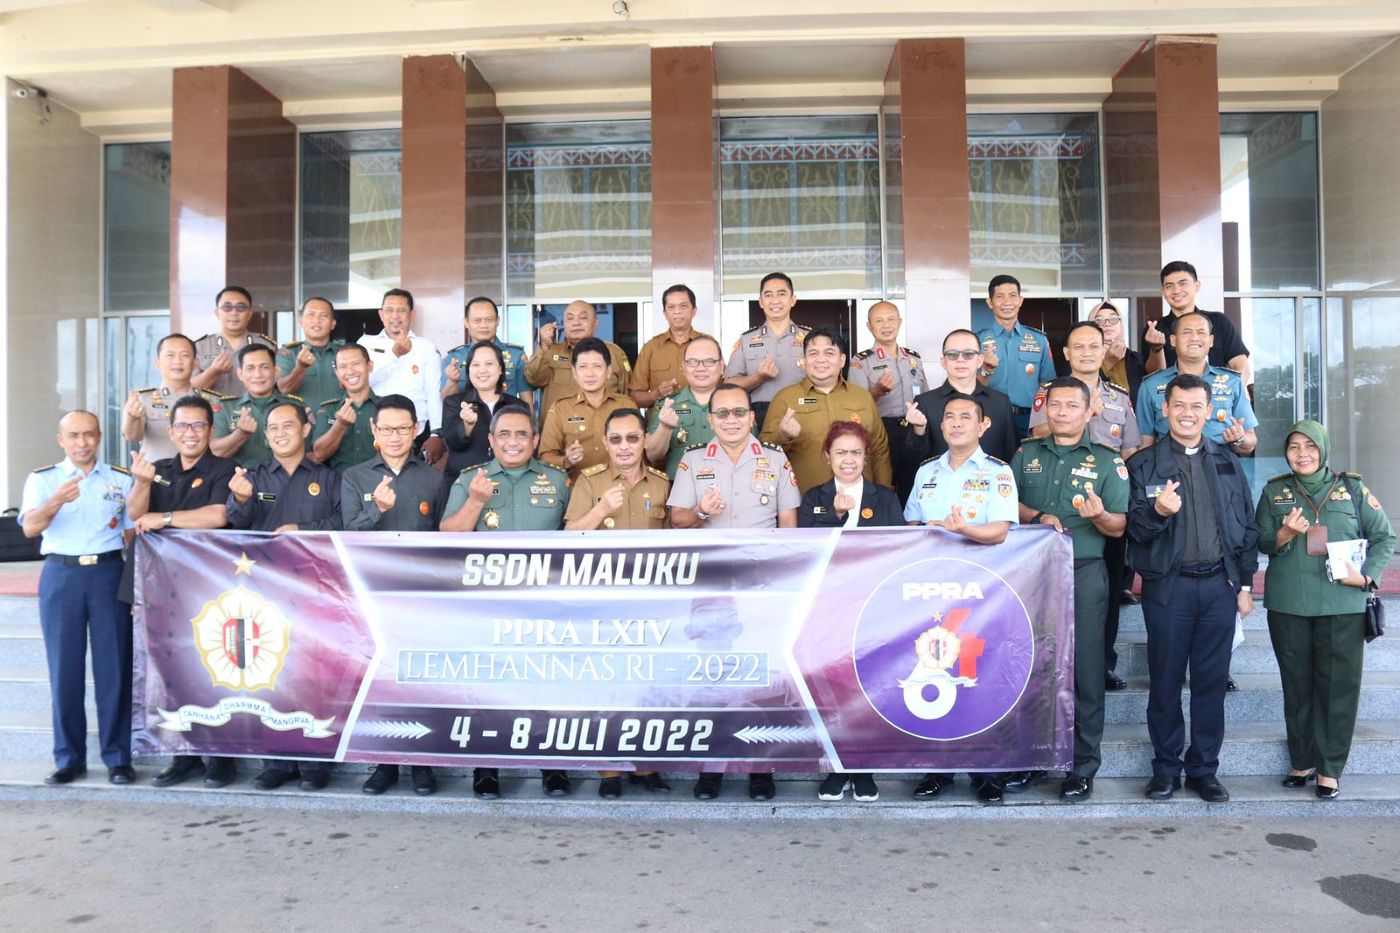 Peserta PPRA LXIV Lemhanas RI Lakukan Studi Strategis Dalam Negeri di Provinsi Maluku